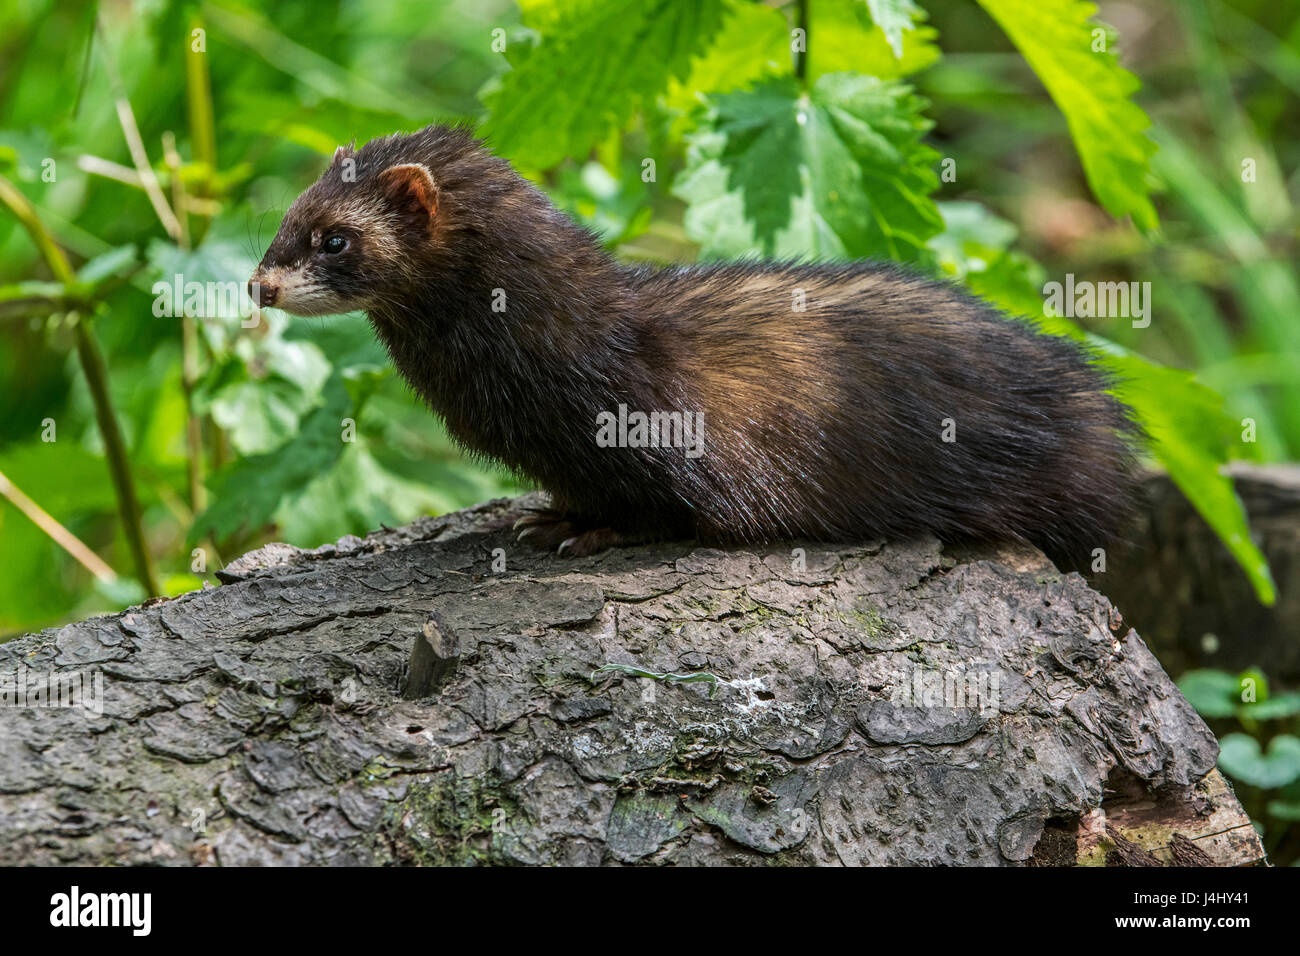 European polecat (Mustela putorius) foraging in forest Stock Photo